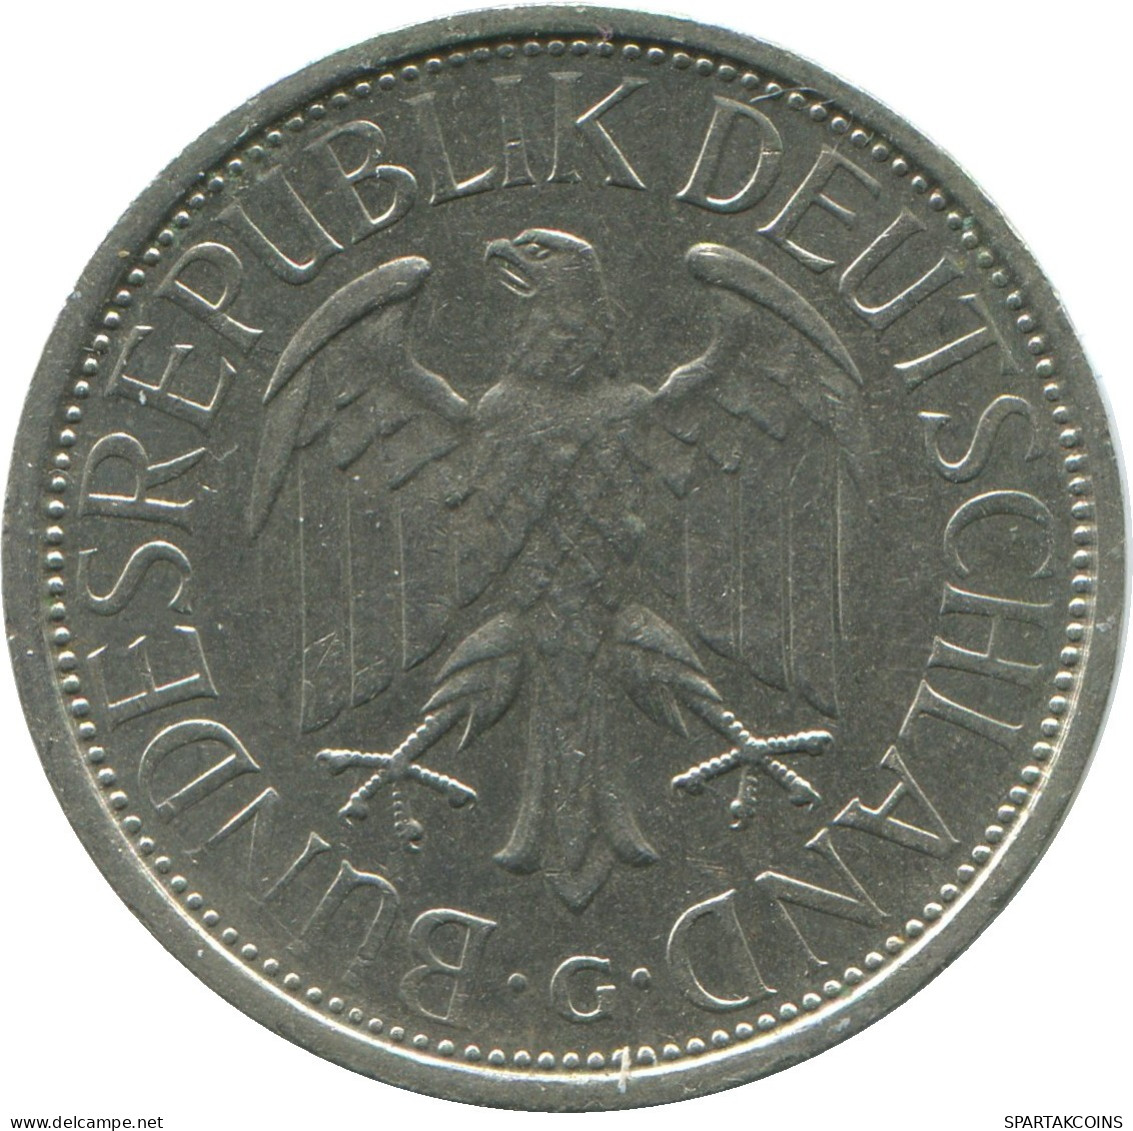 1 MARK 1974 G BRD ALEMANIA Moneda GERMANY #DE10417.5.E.A - 1 Marco